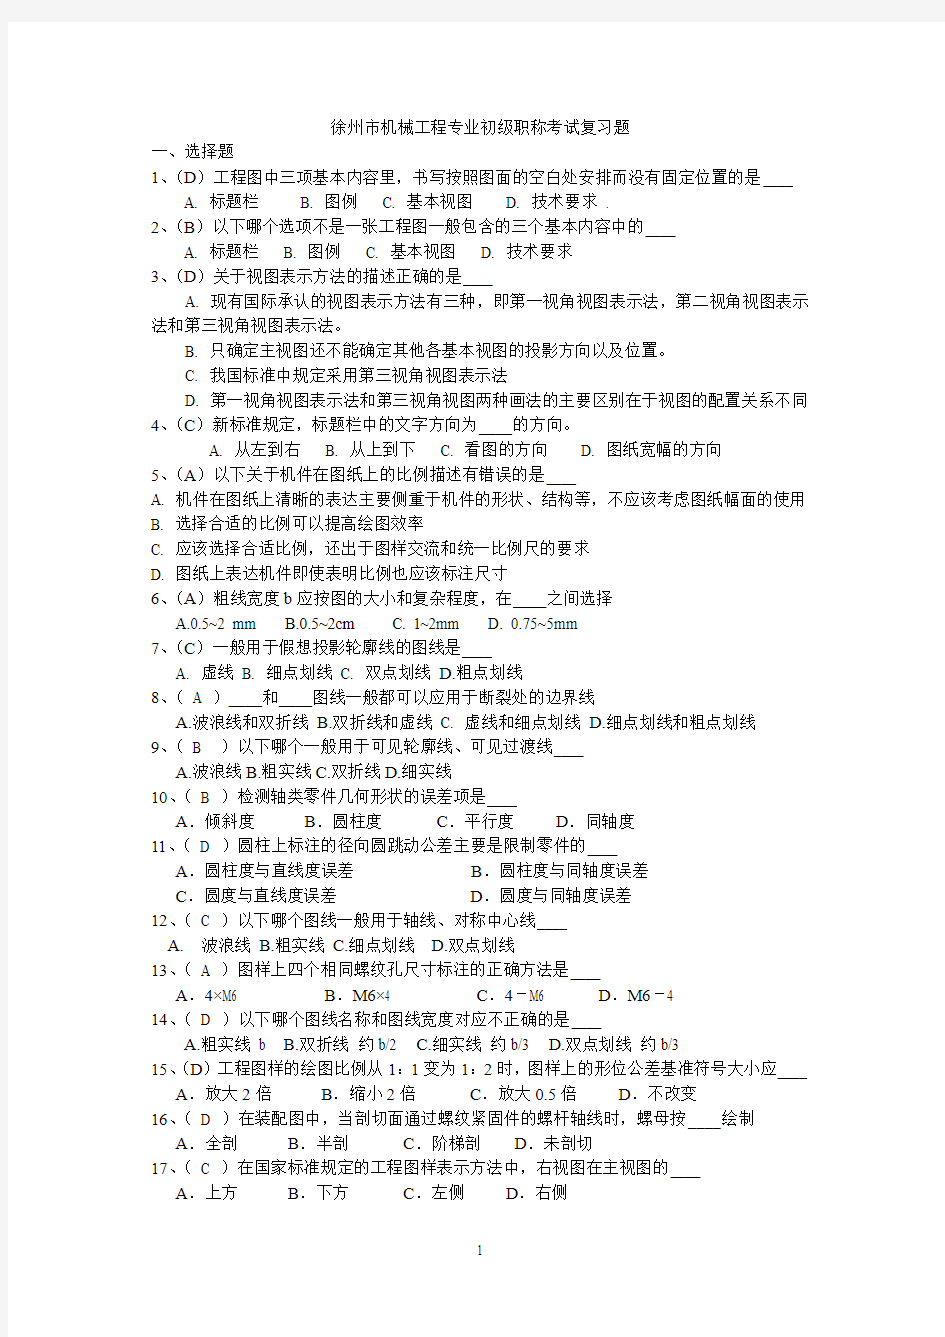 江苏省徐州市机械工程专业初级职称考试复习题2000~2015(也称为徐工试题)含参考答案